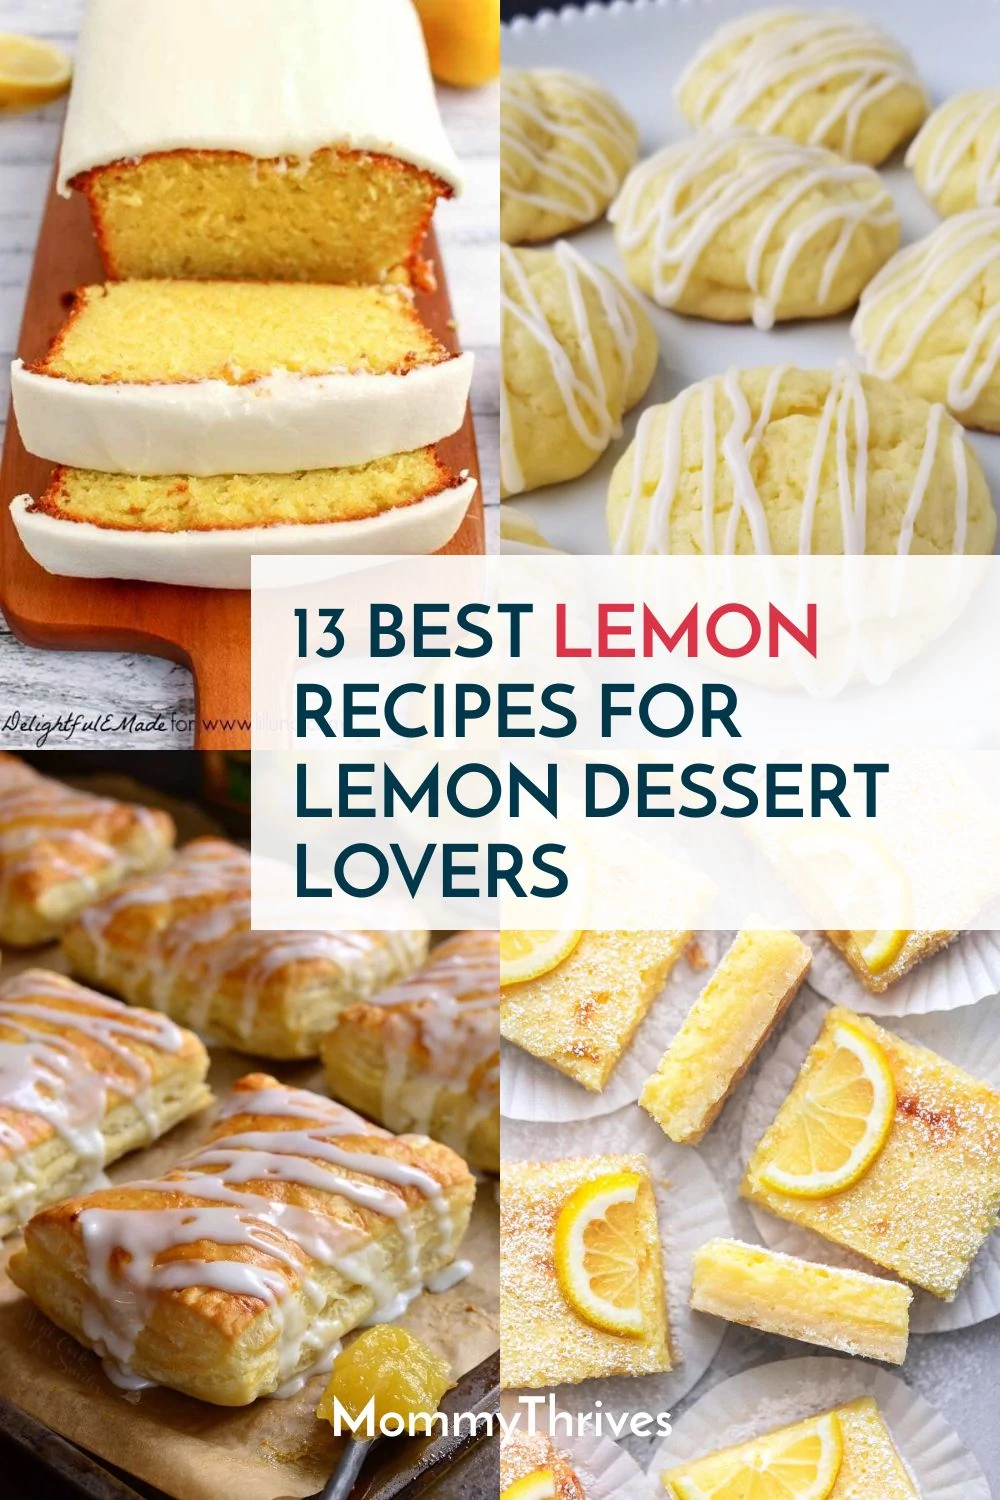 Best Lemon Recipes For Lemon Dessert Lovers - Must Try Lemon Desserts - Lemon Recipes for Desserts